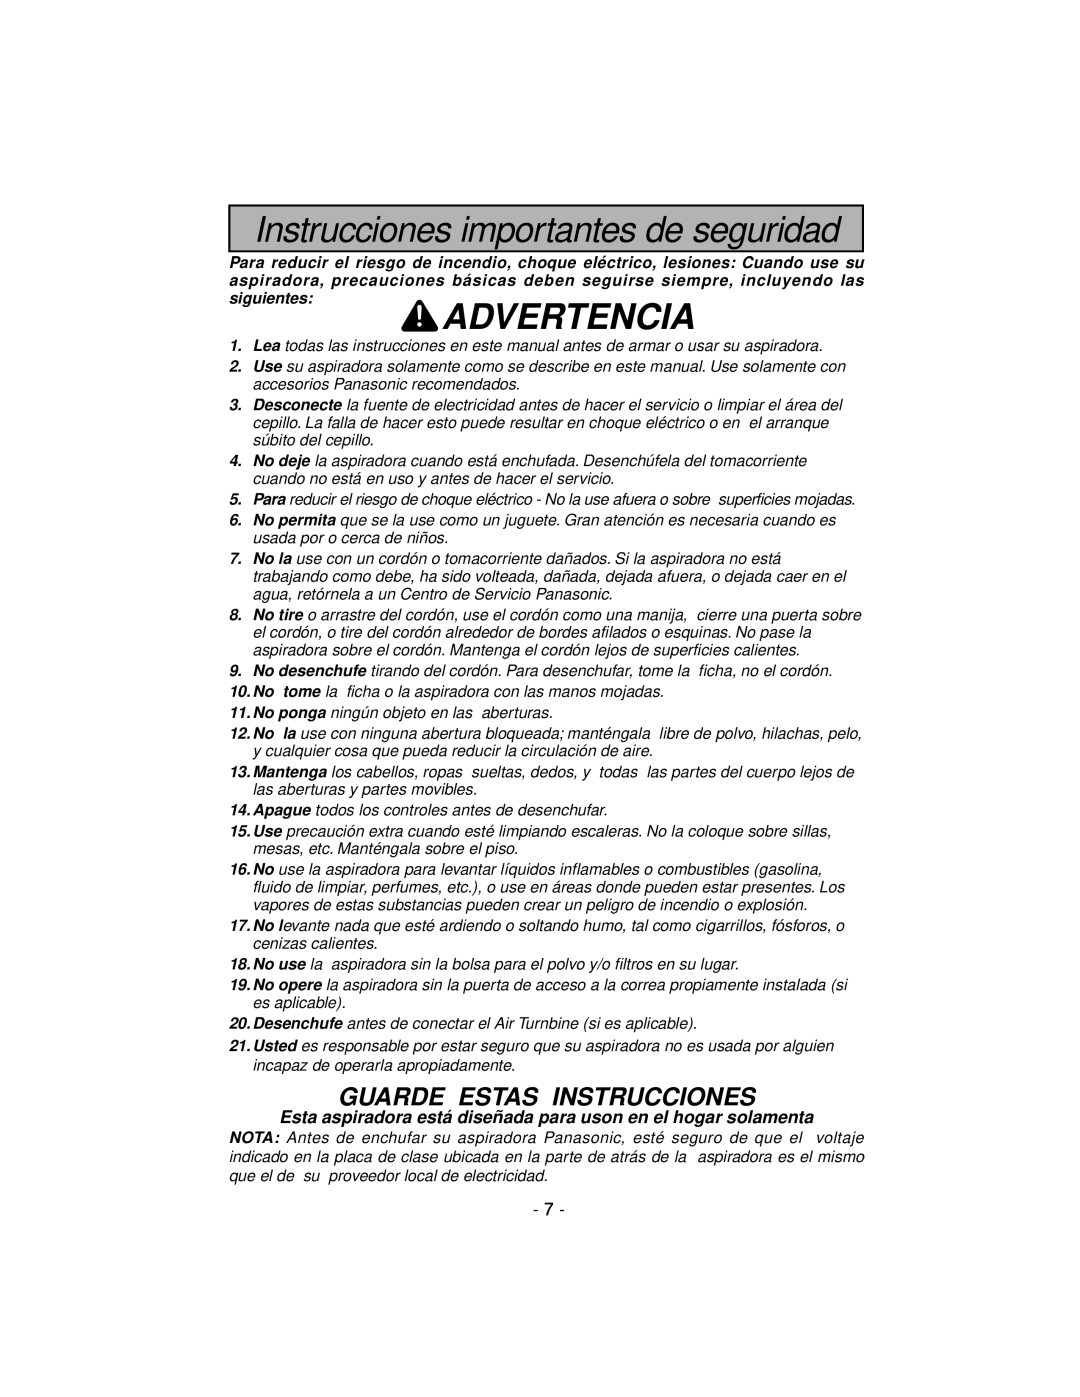 Panasonic MC-V7600 operating instructions Instrucciones importantes de seguridad, Advertencia, Guarde Estas Instrucciones 